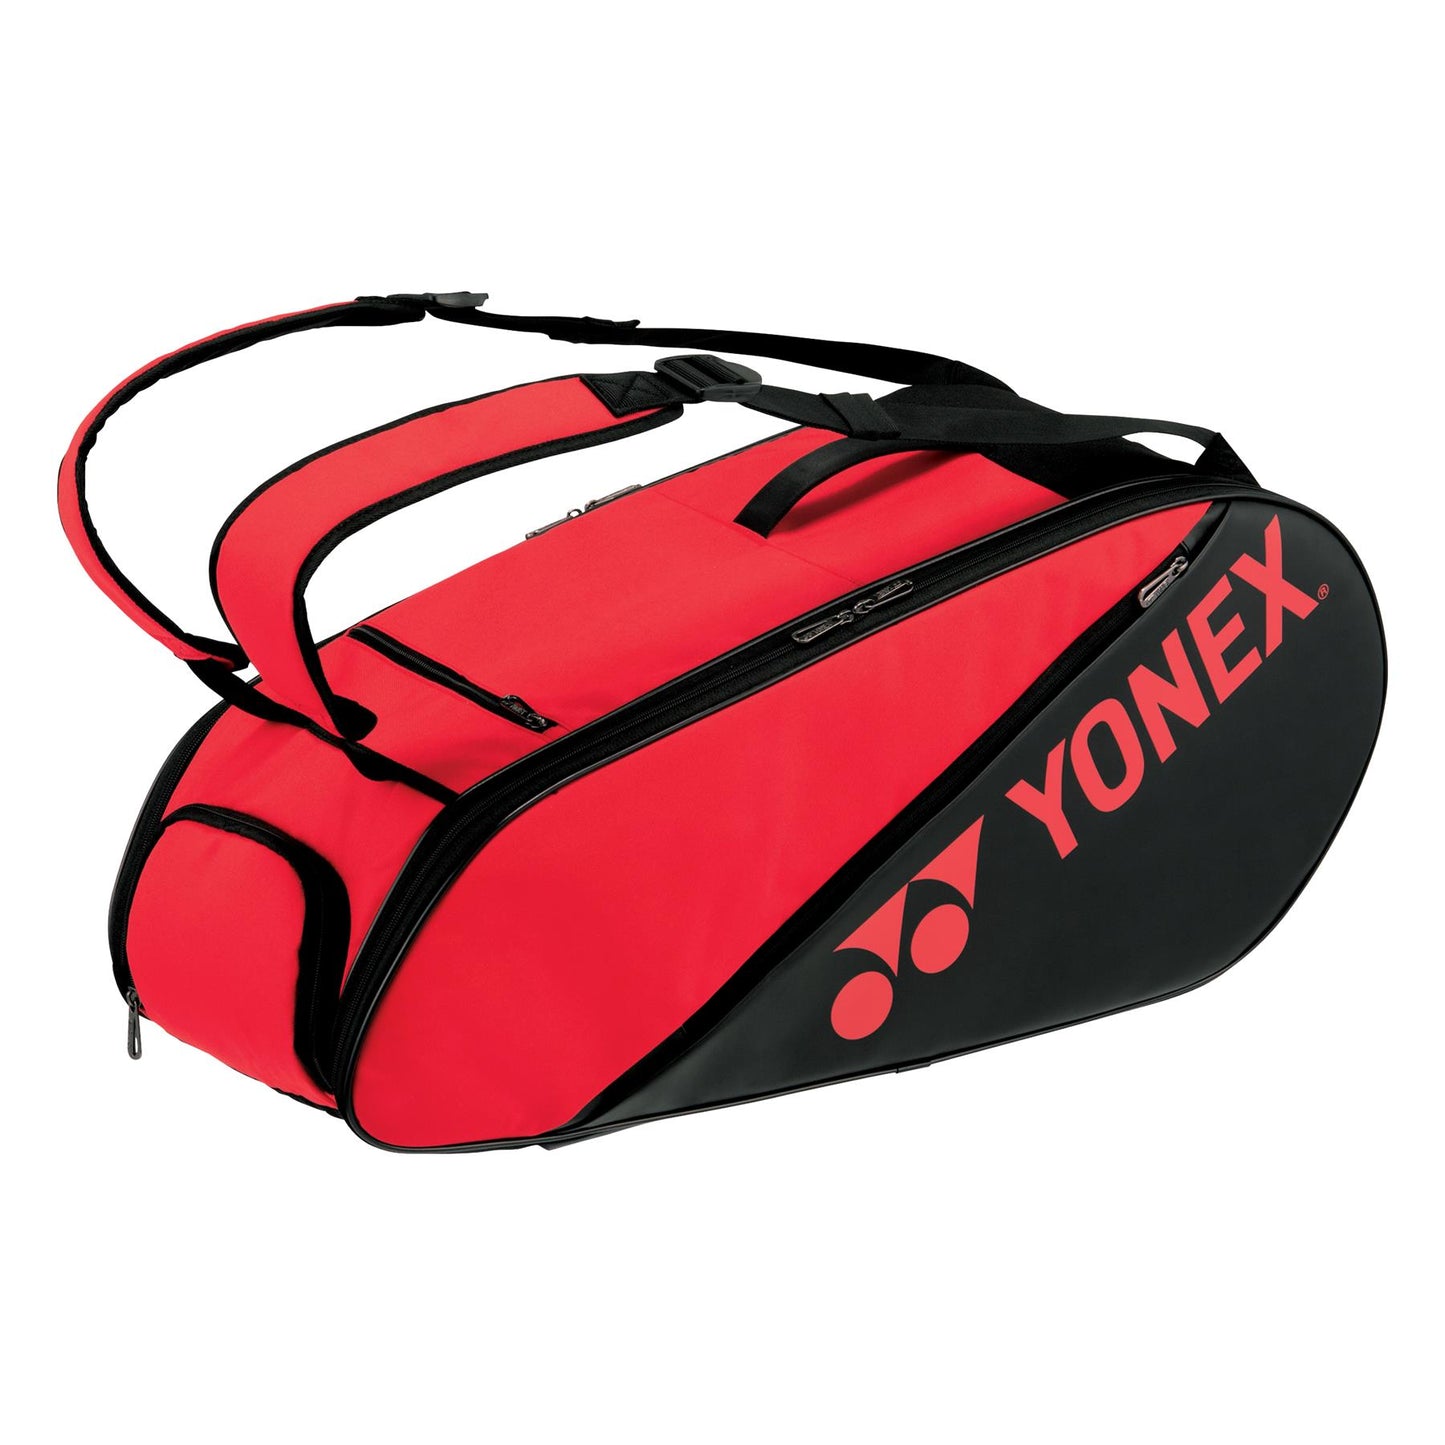 Yonex 6 Piece Active Badminton Racket Bag 82226 - Black / Red